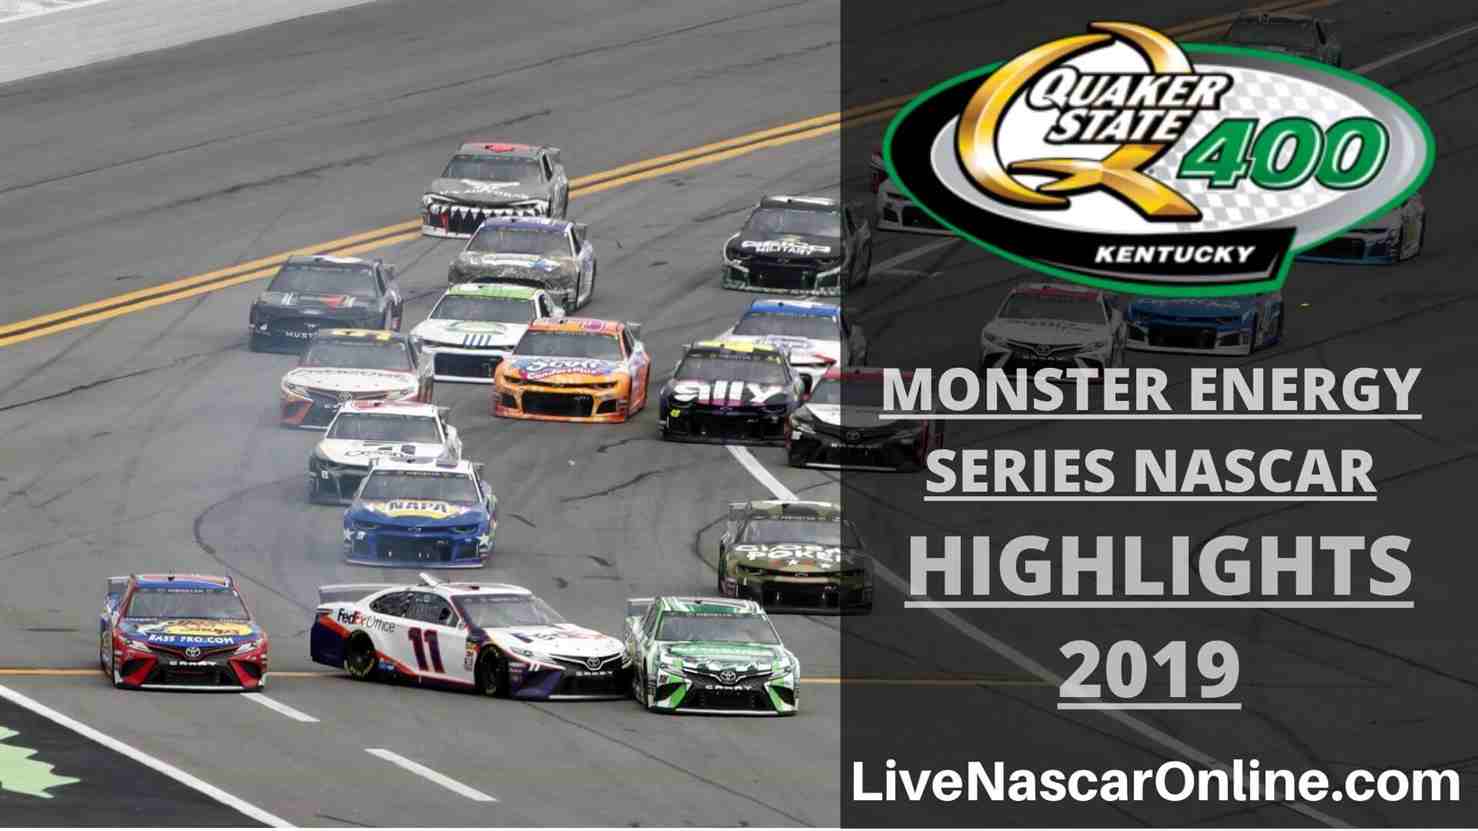 NASCAR Monster Energy Series QUAKER STATE 400 HIGHLIGHTS 2019 Online